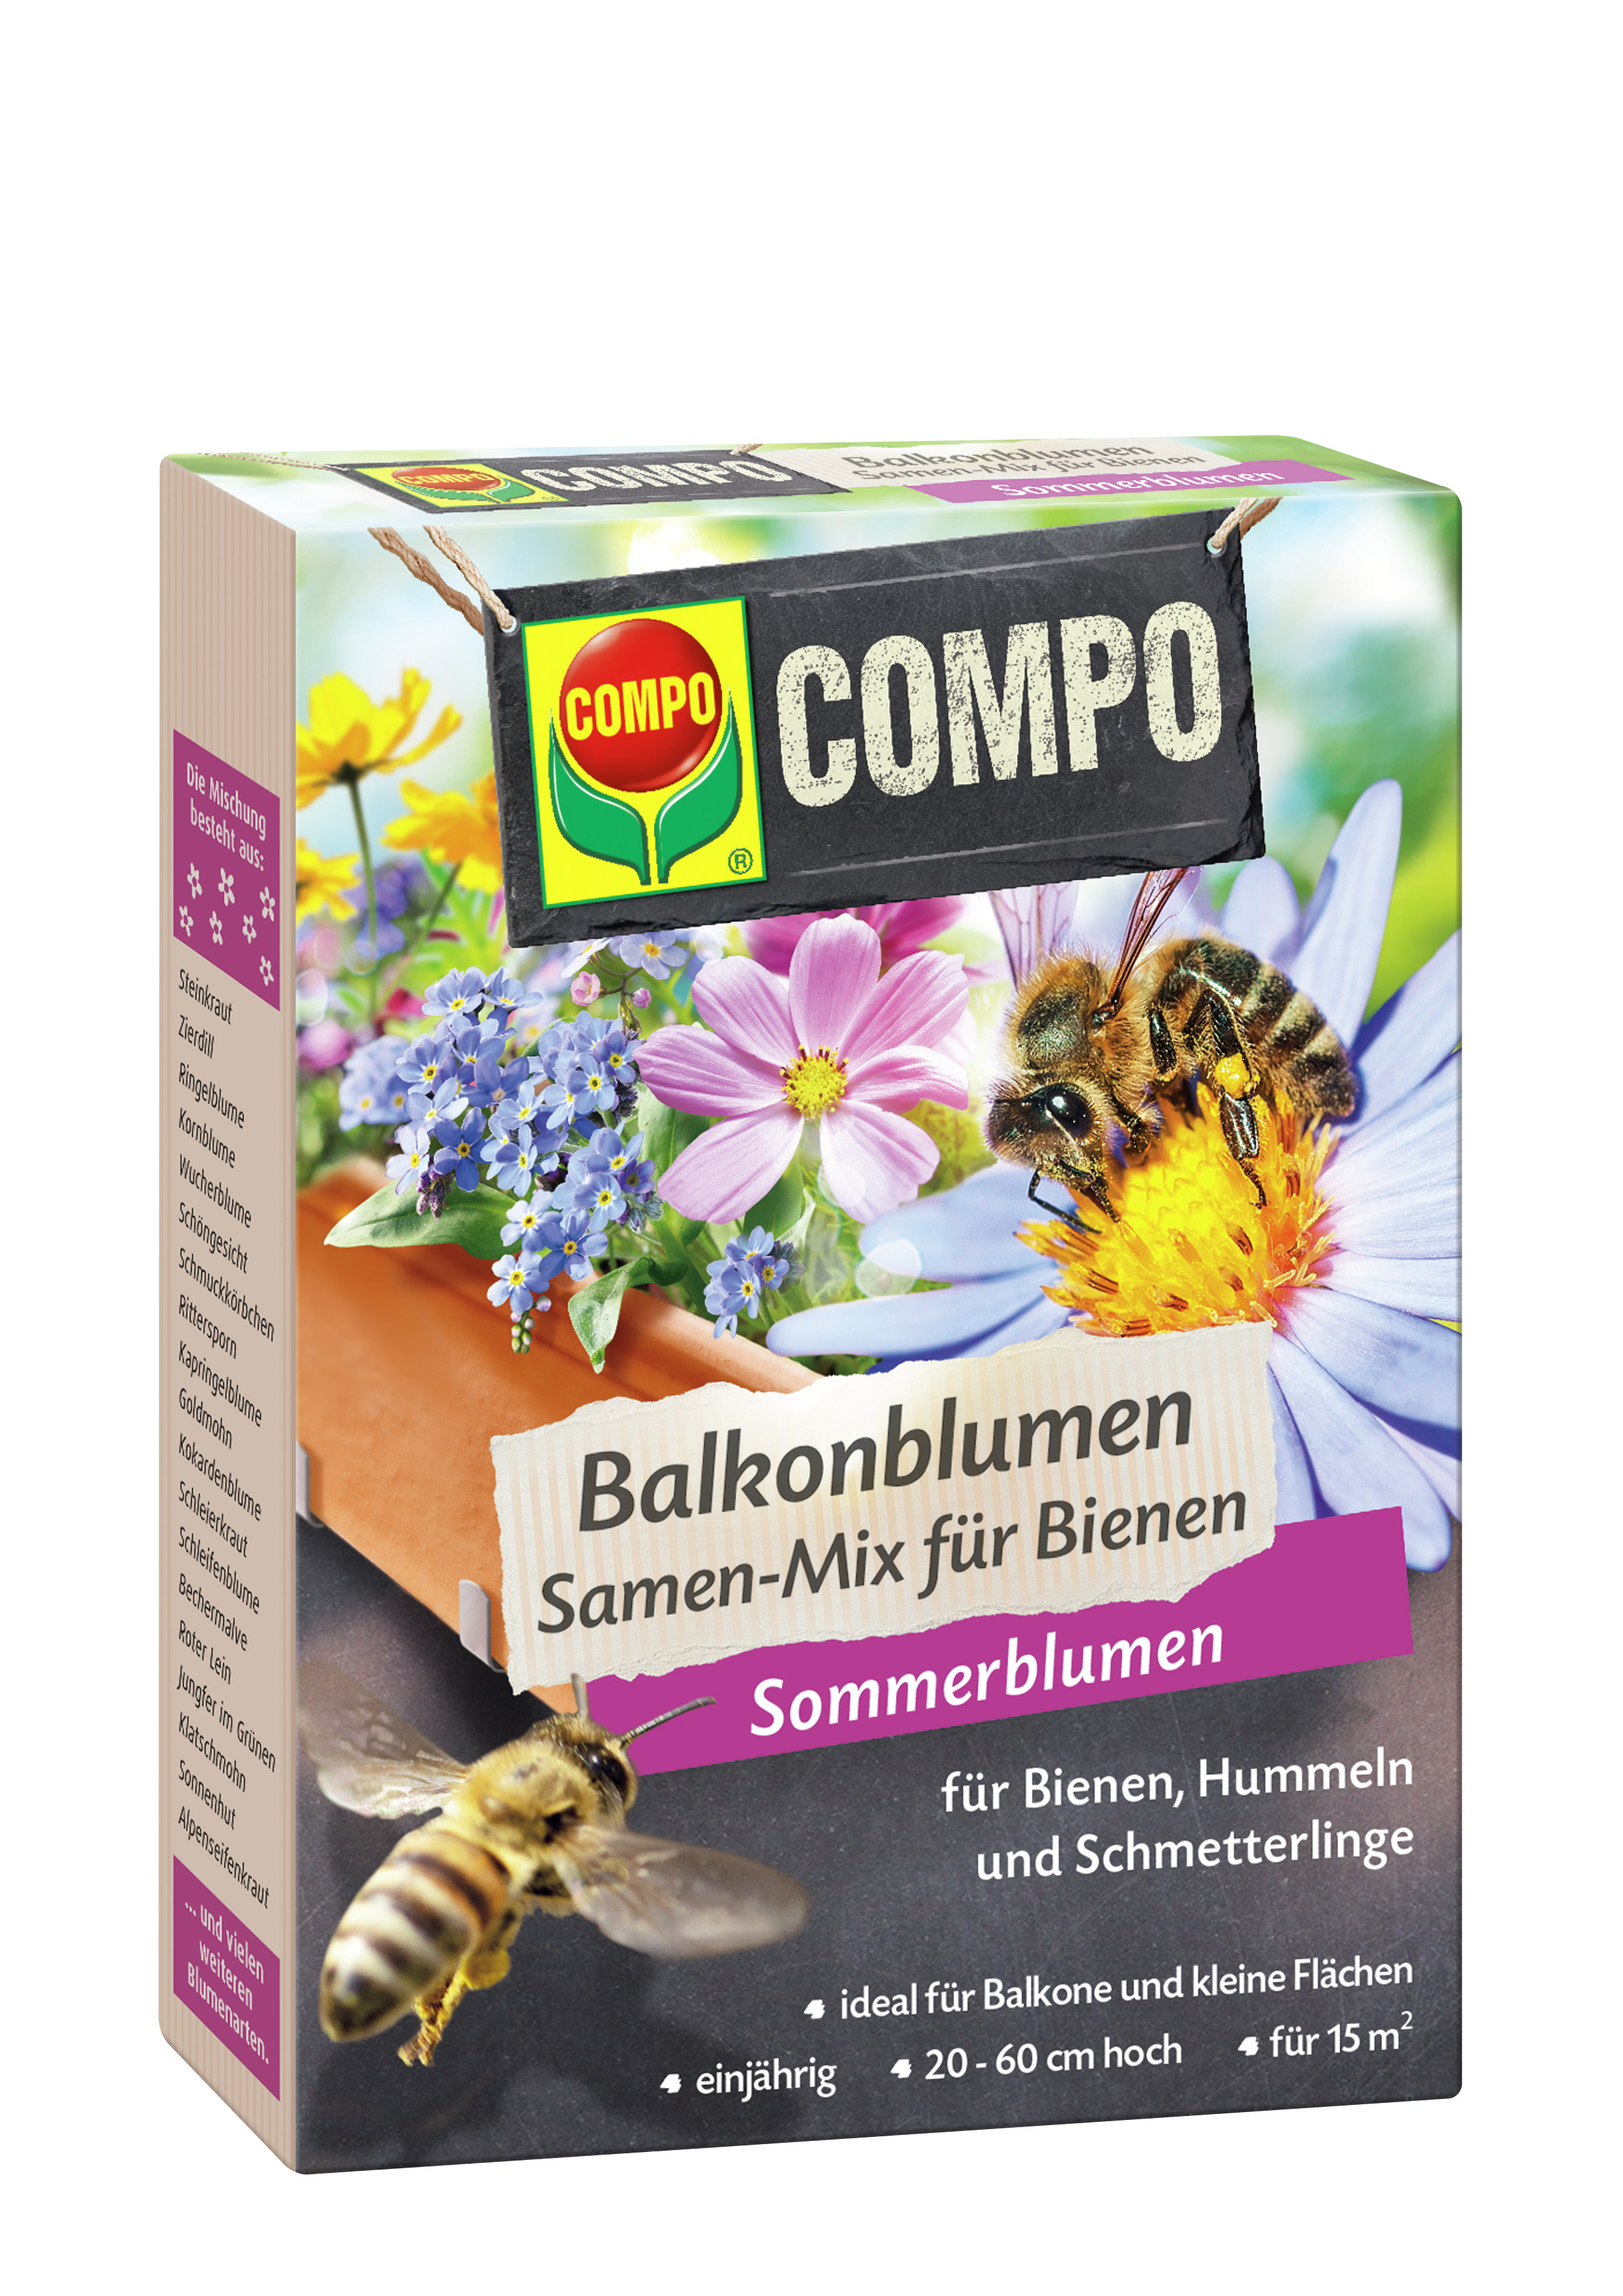 COMPO Balkonblumen Samen-Mix für Bienen 100 g für 15m² Blumenmischung